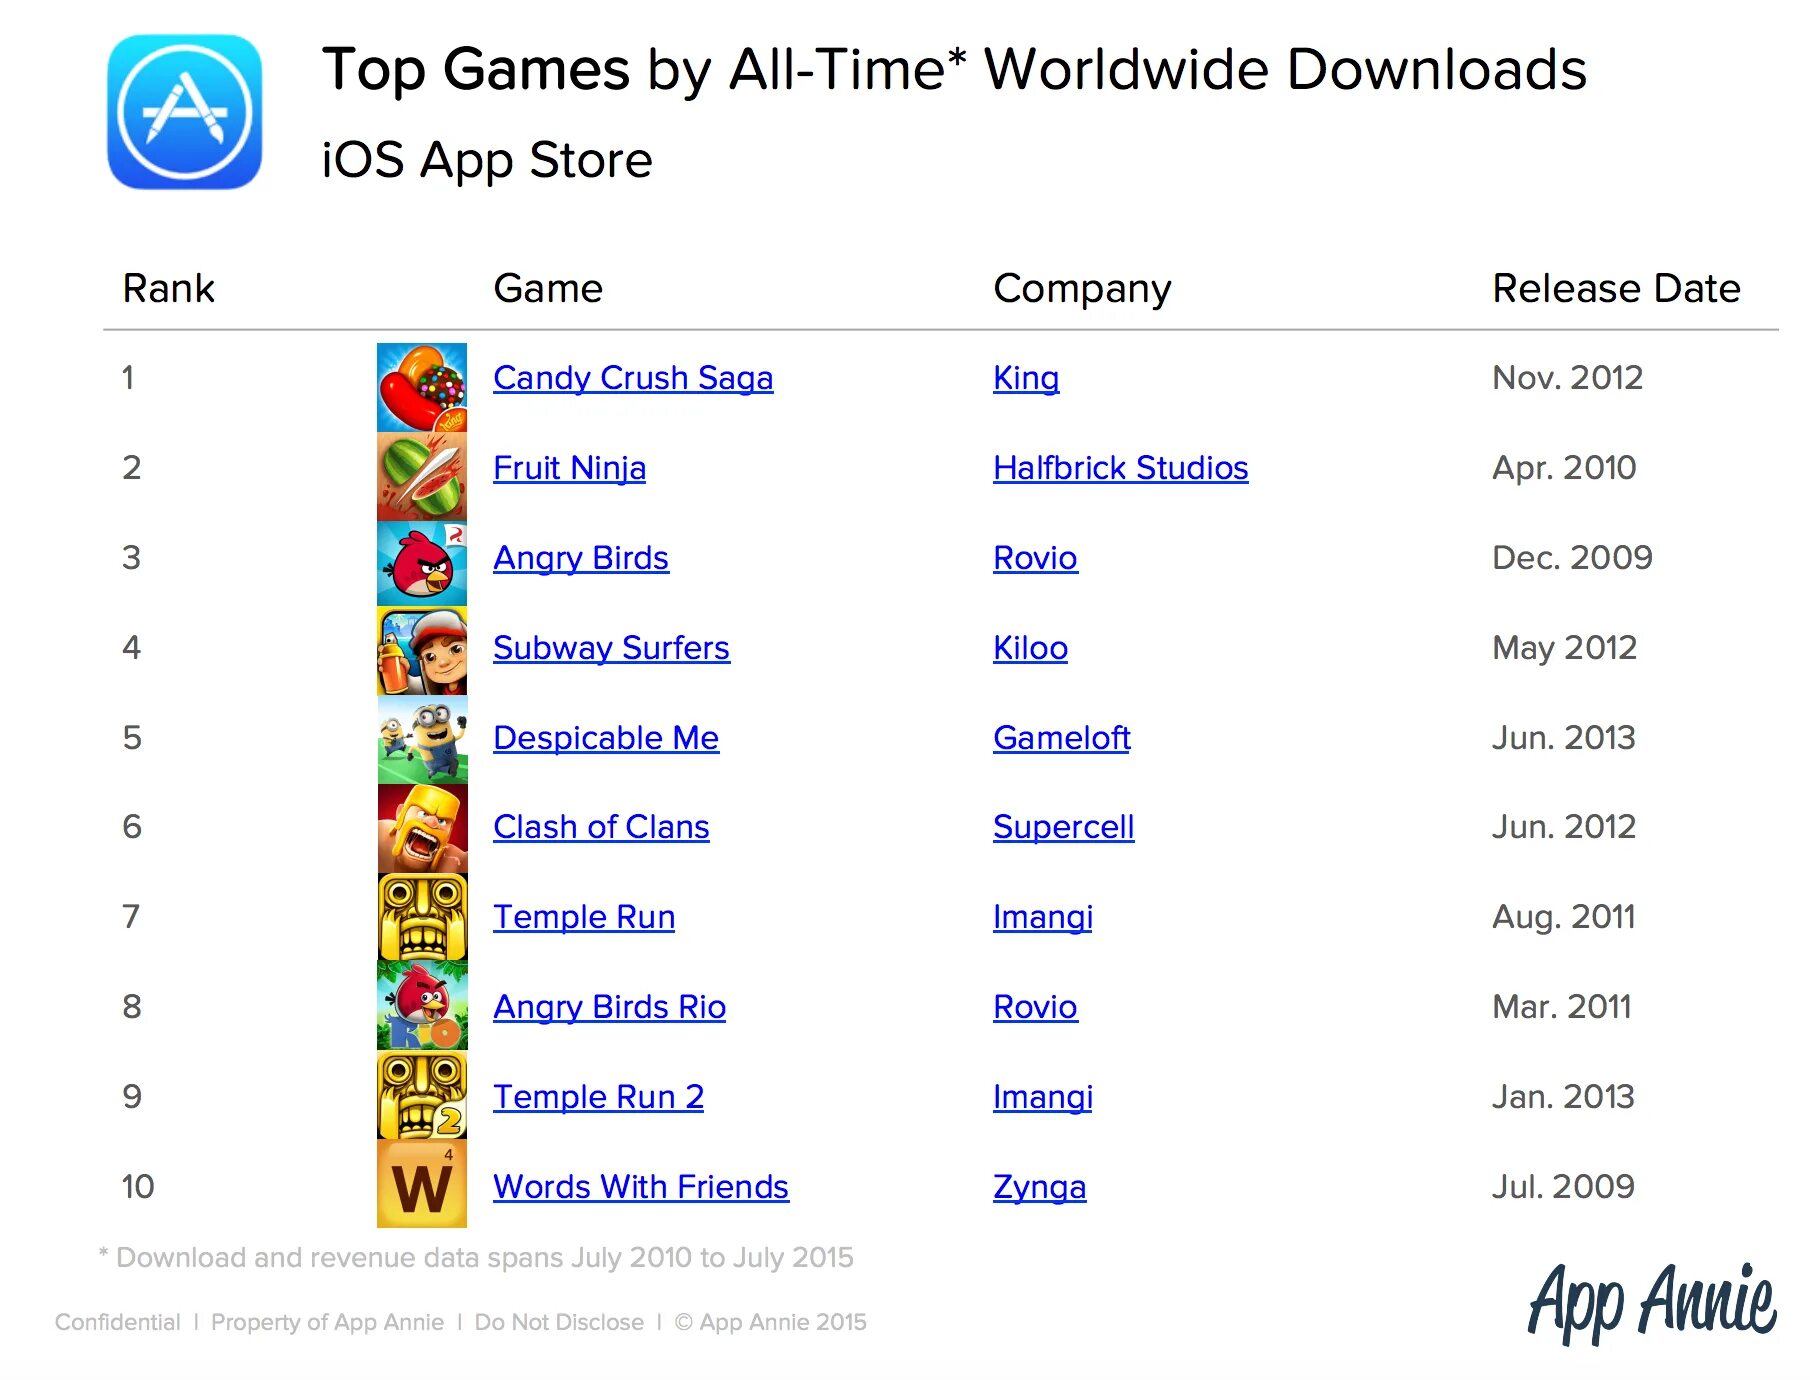 Список игр всех времен. Список самых популярных игр. Популярные игры список. Список самых популярных мобильных игр. Какая игра на 1 месте.